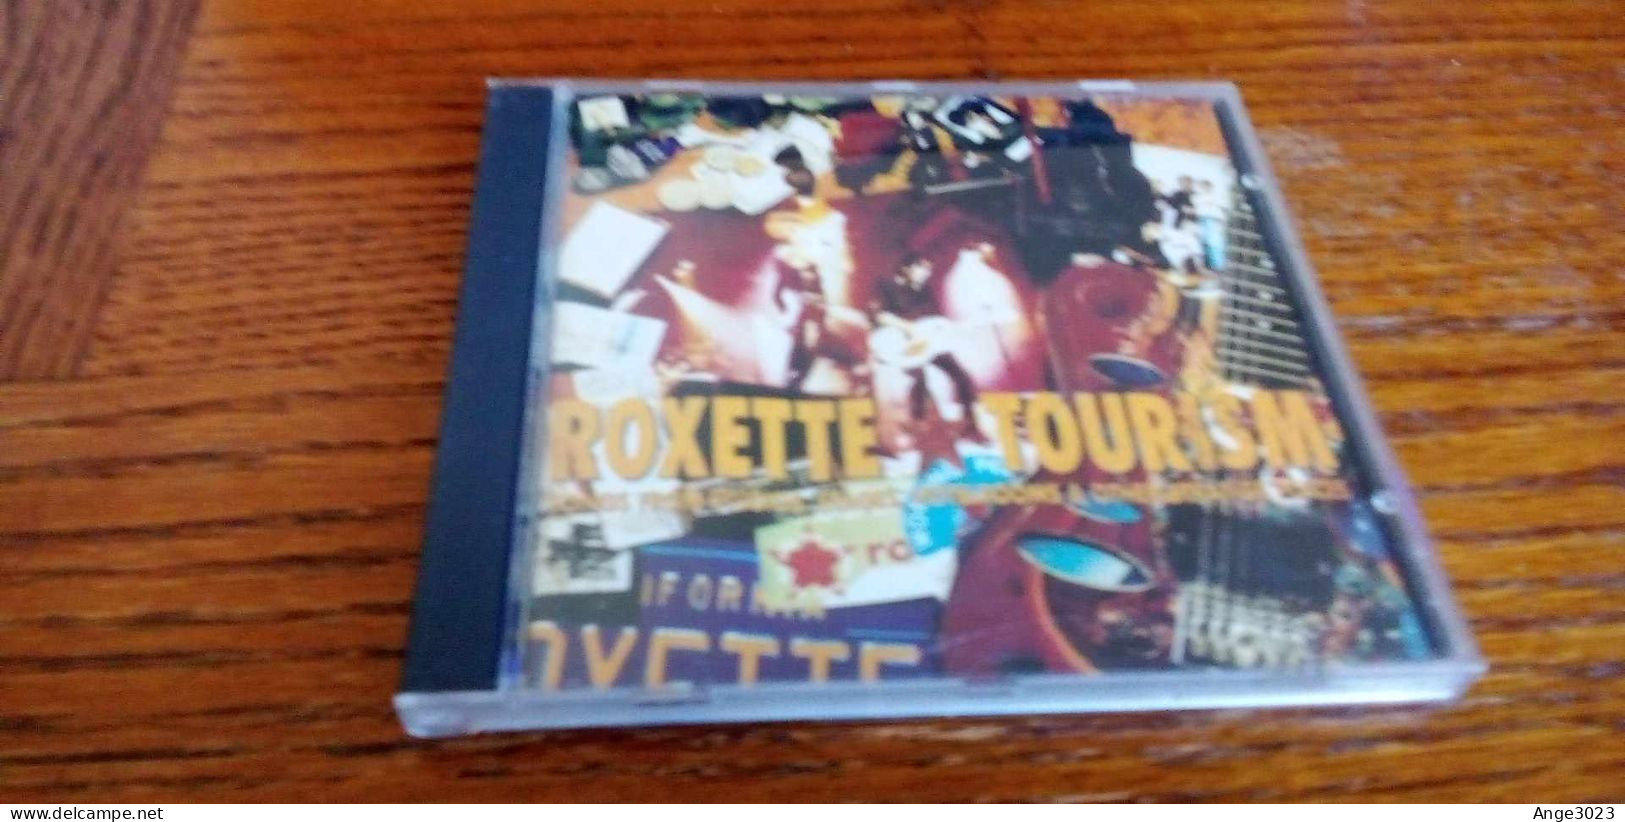 ROXETTE "Tourism" - Rock